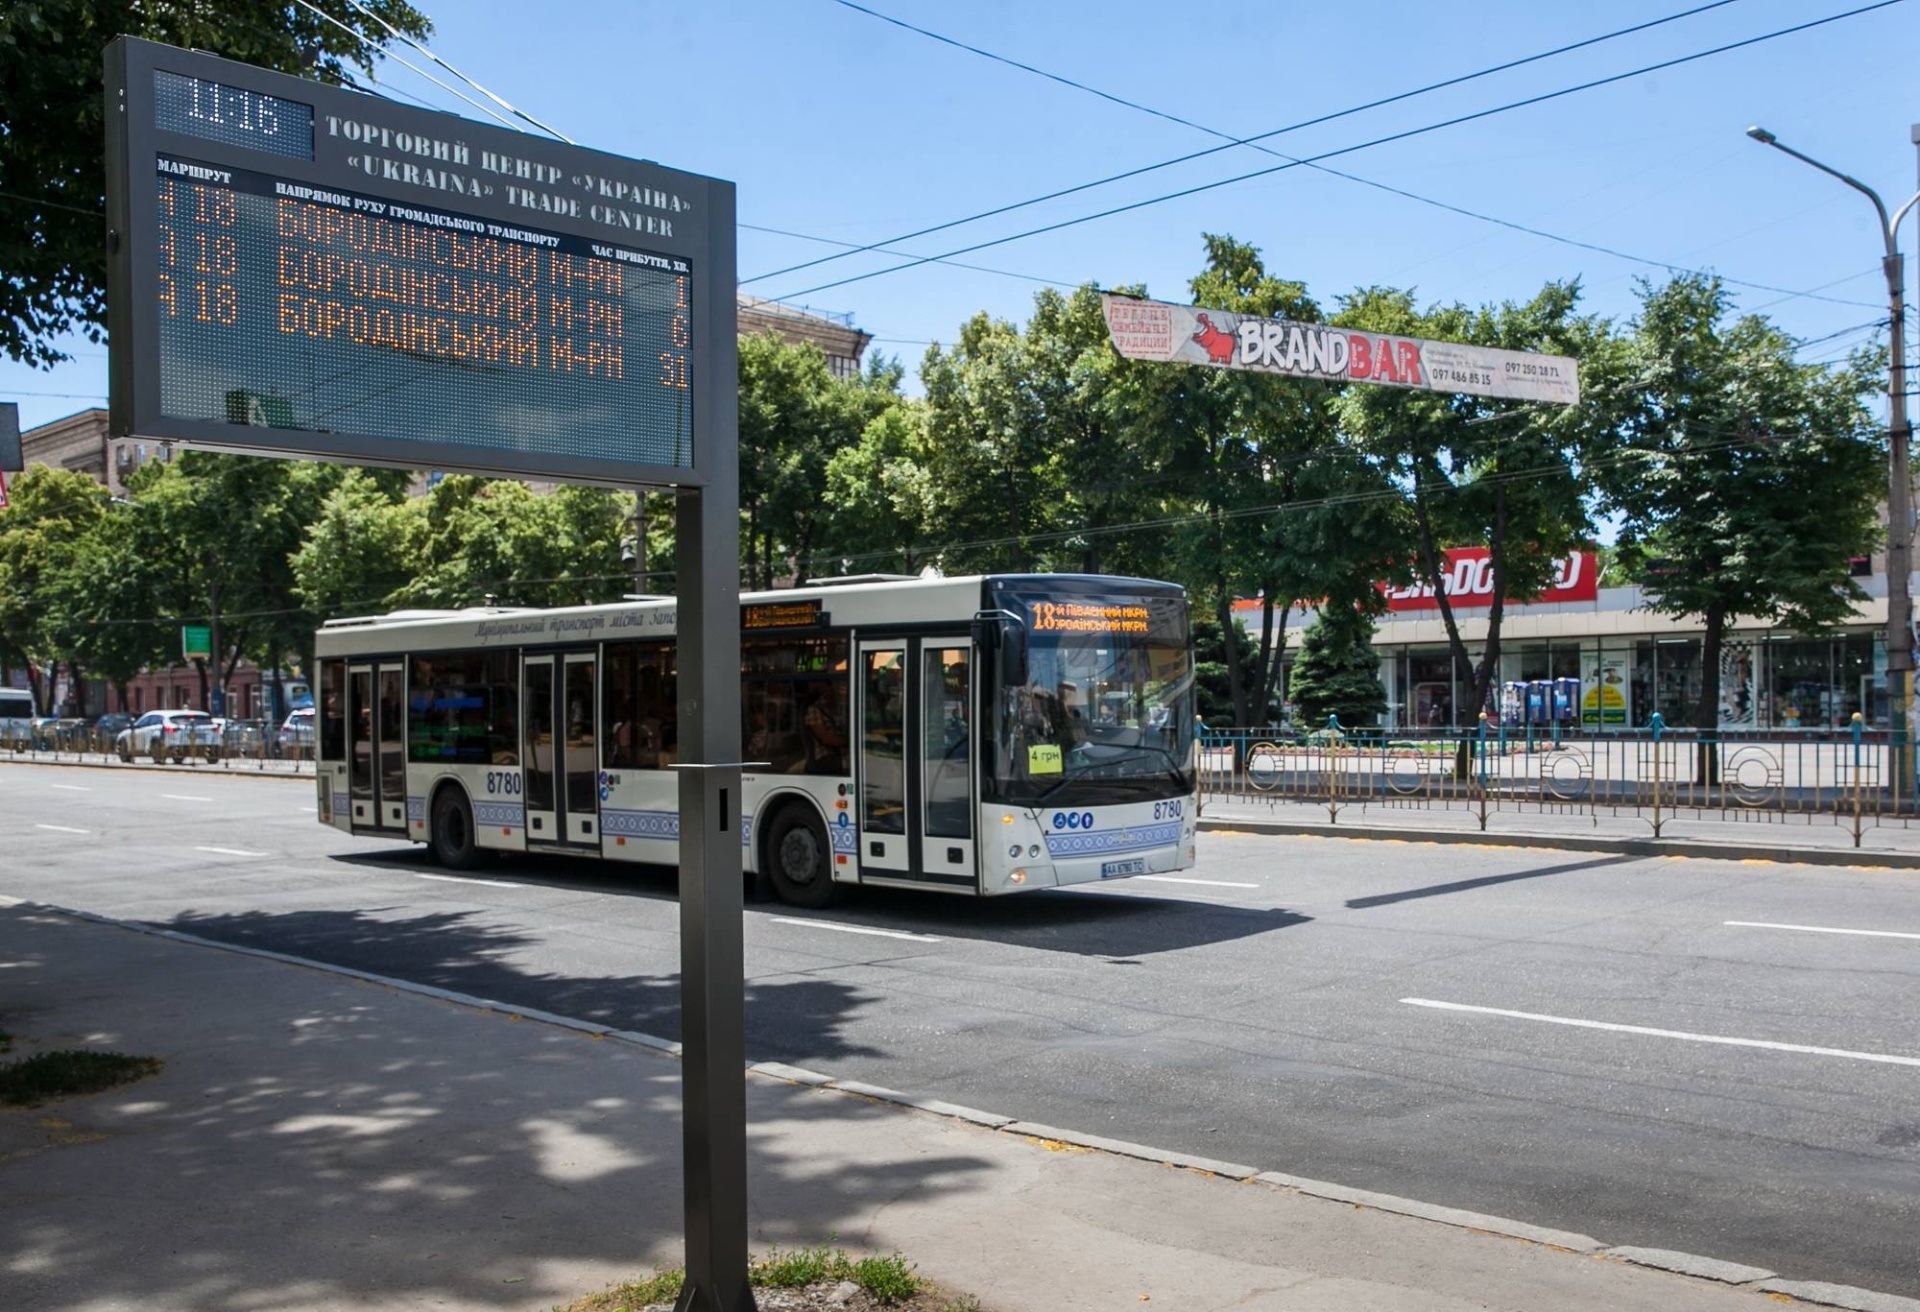 Общественный транспорт в Запорожье изменит маршруты: подробности